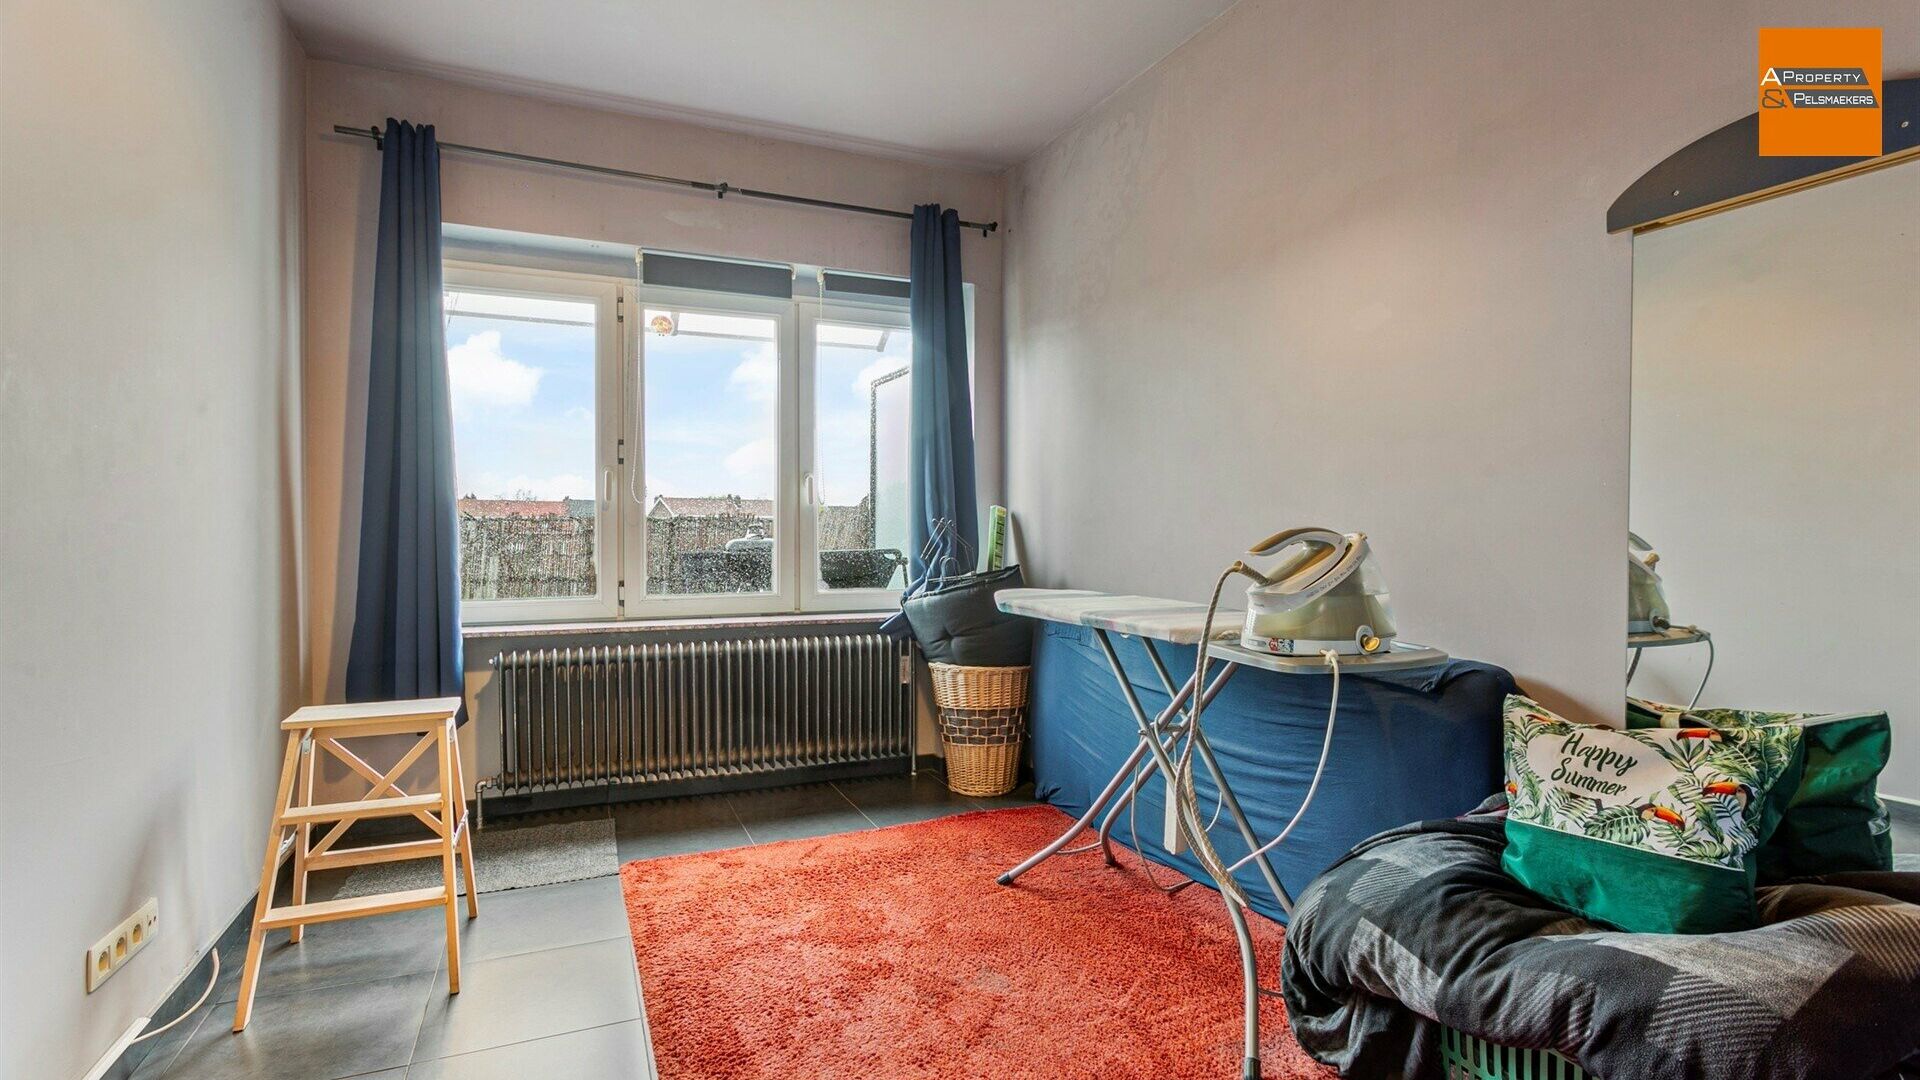 Appartement te koop in KORTENBERG